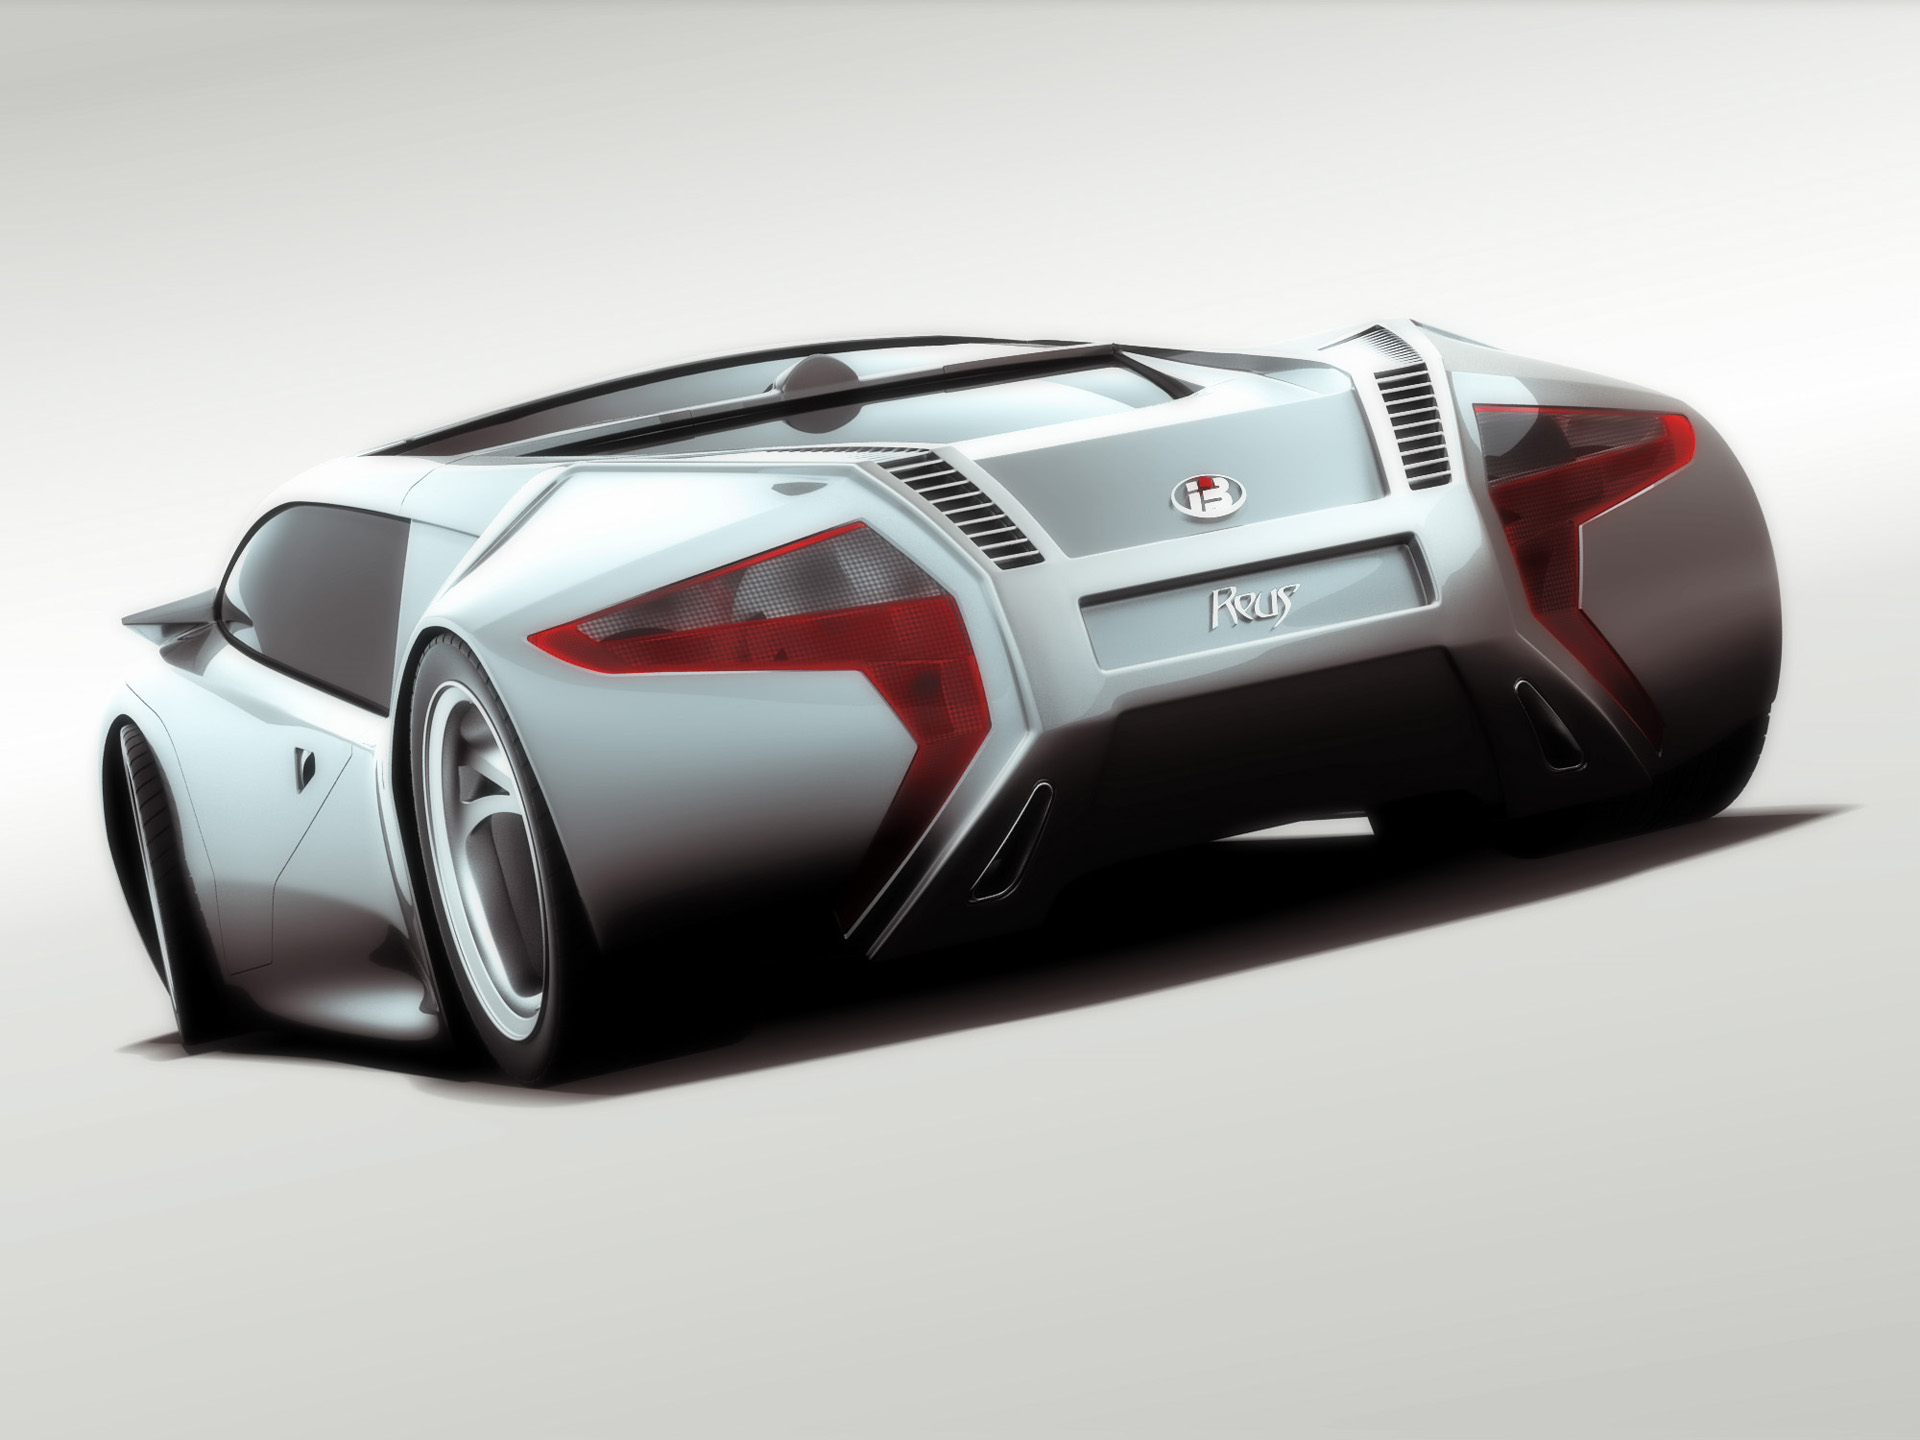 2007, I2b, Concept, Reus, Supercar, Supercars Wallpaper